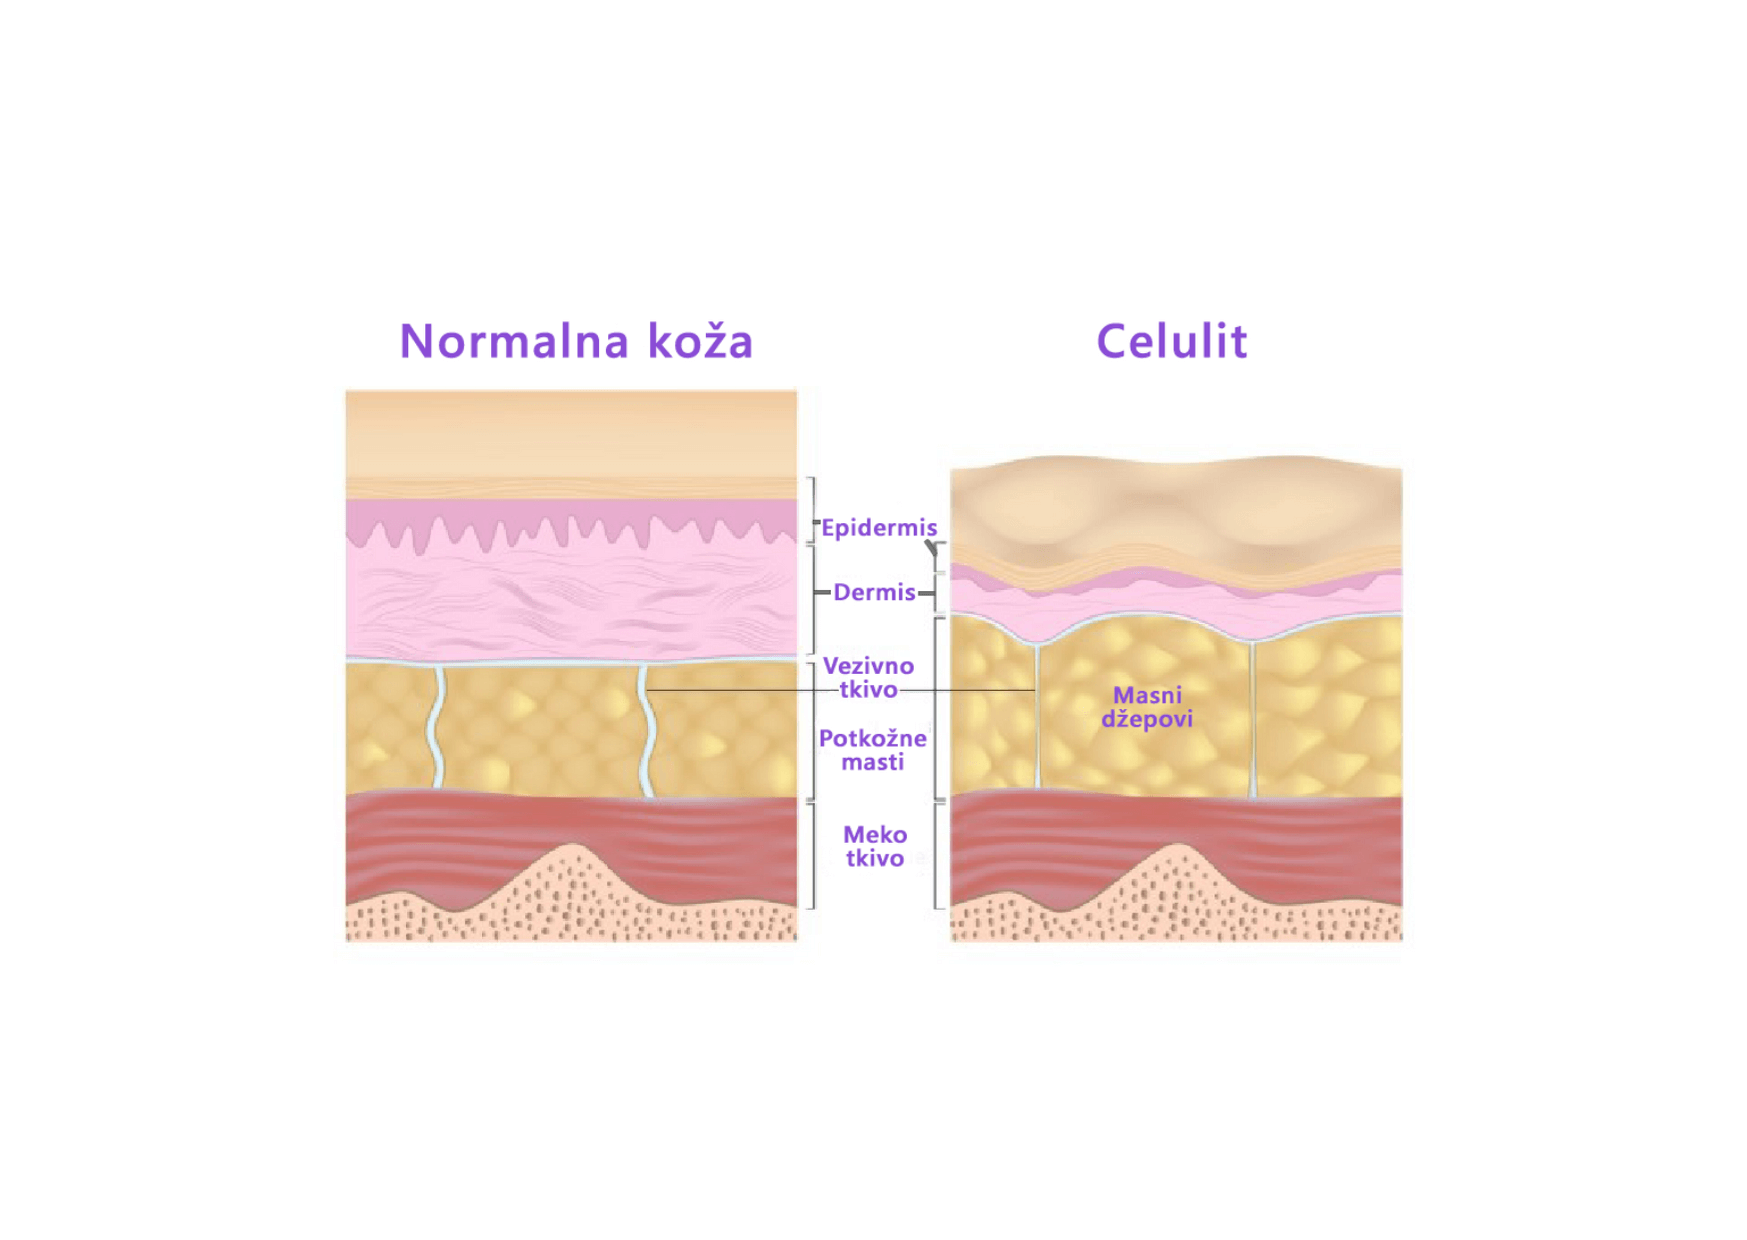 Celulit in normalna koža